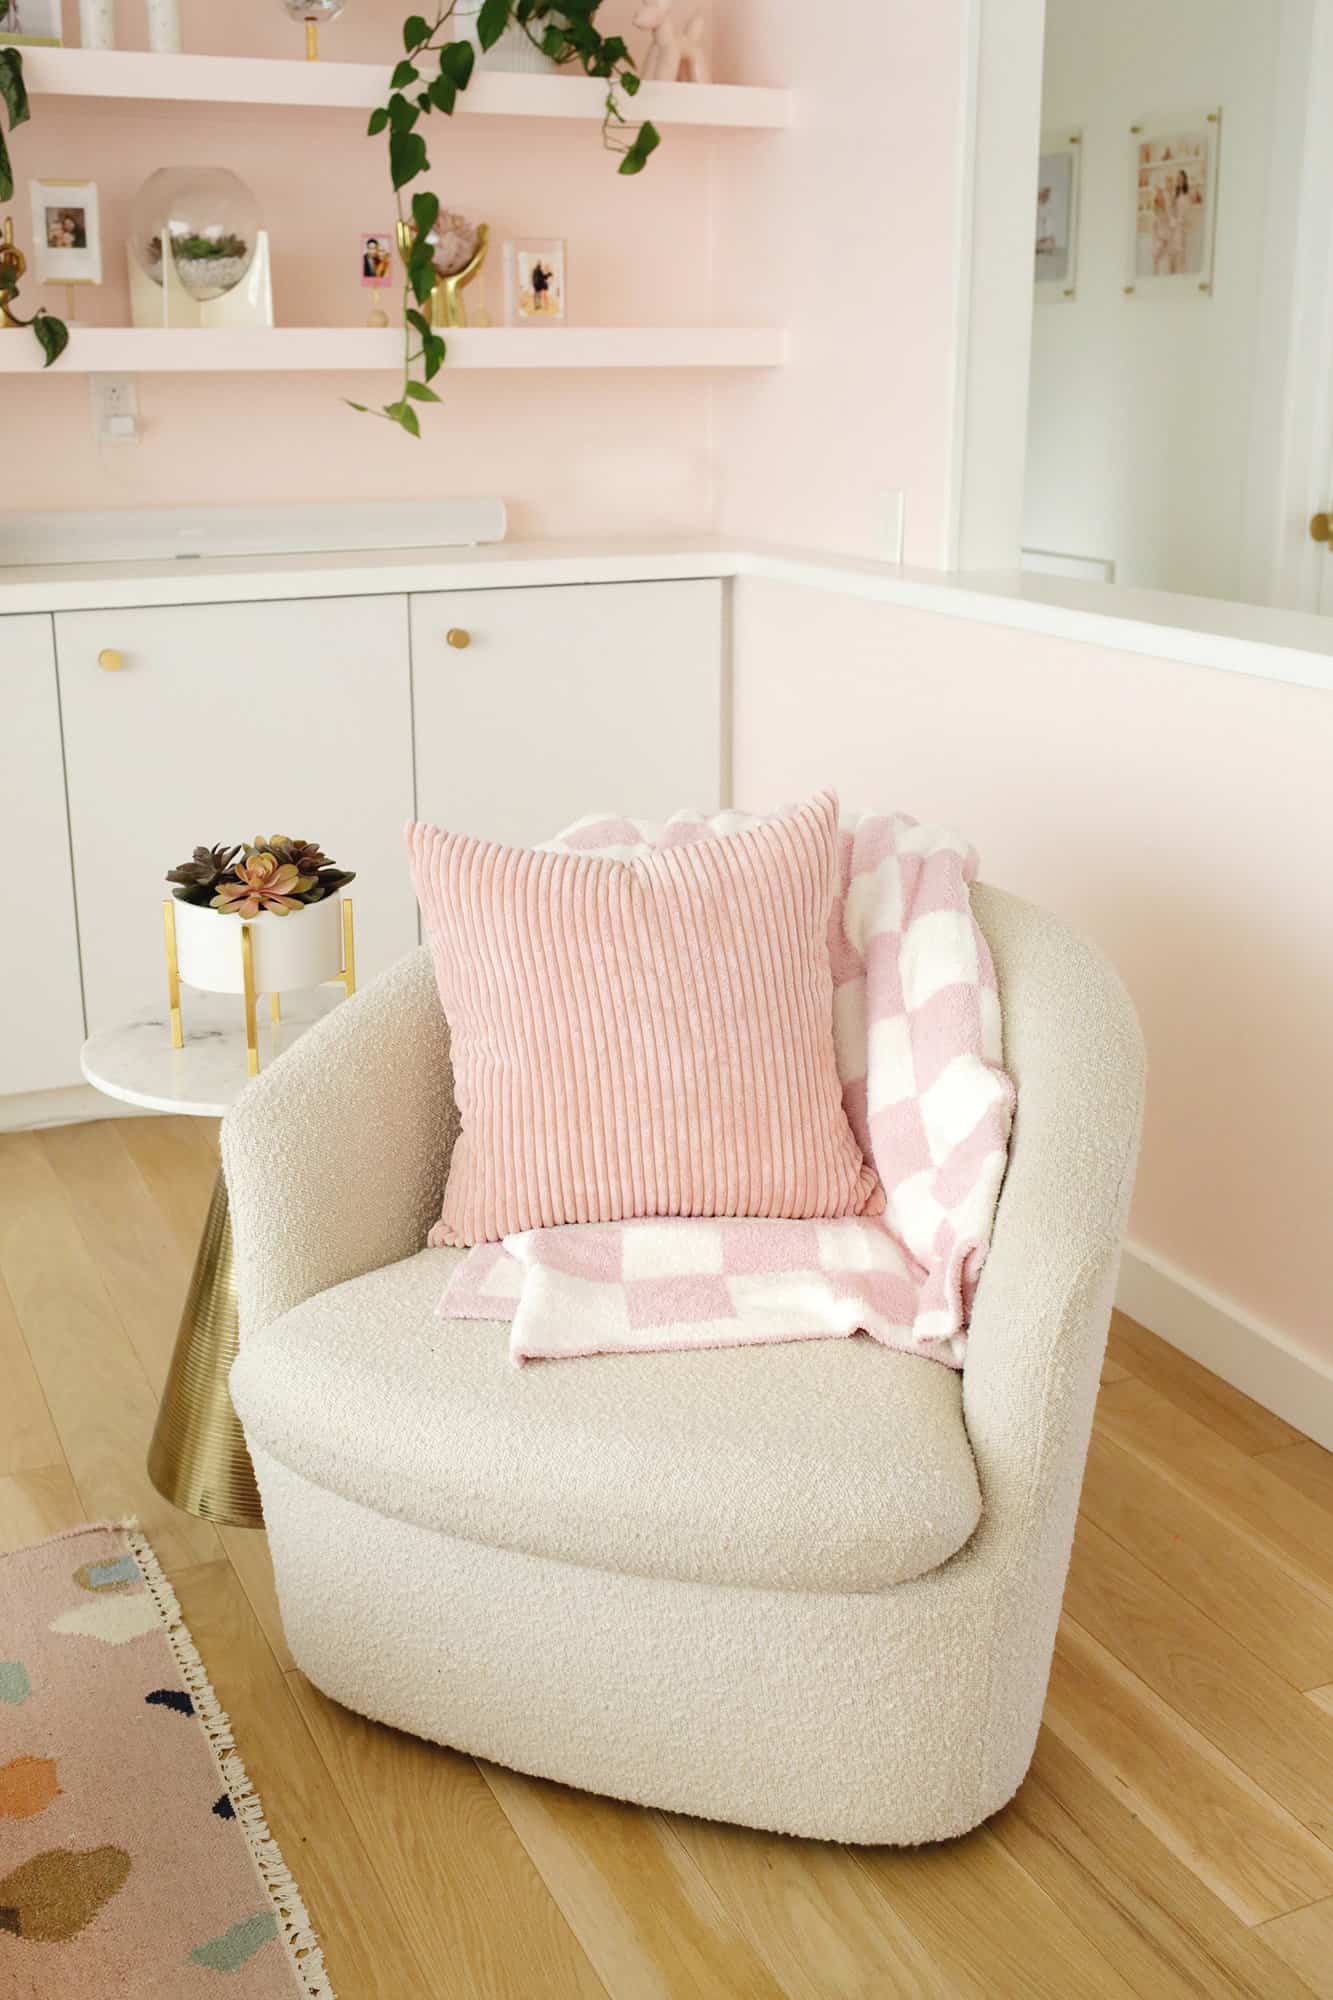 분홍색과 흰색 담요와 분홍색 베개가 있는 의자